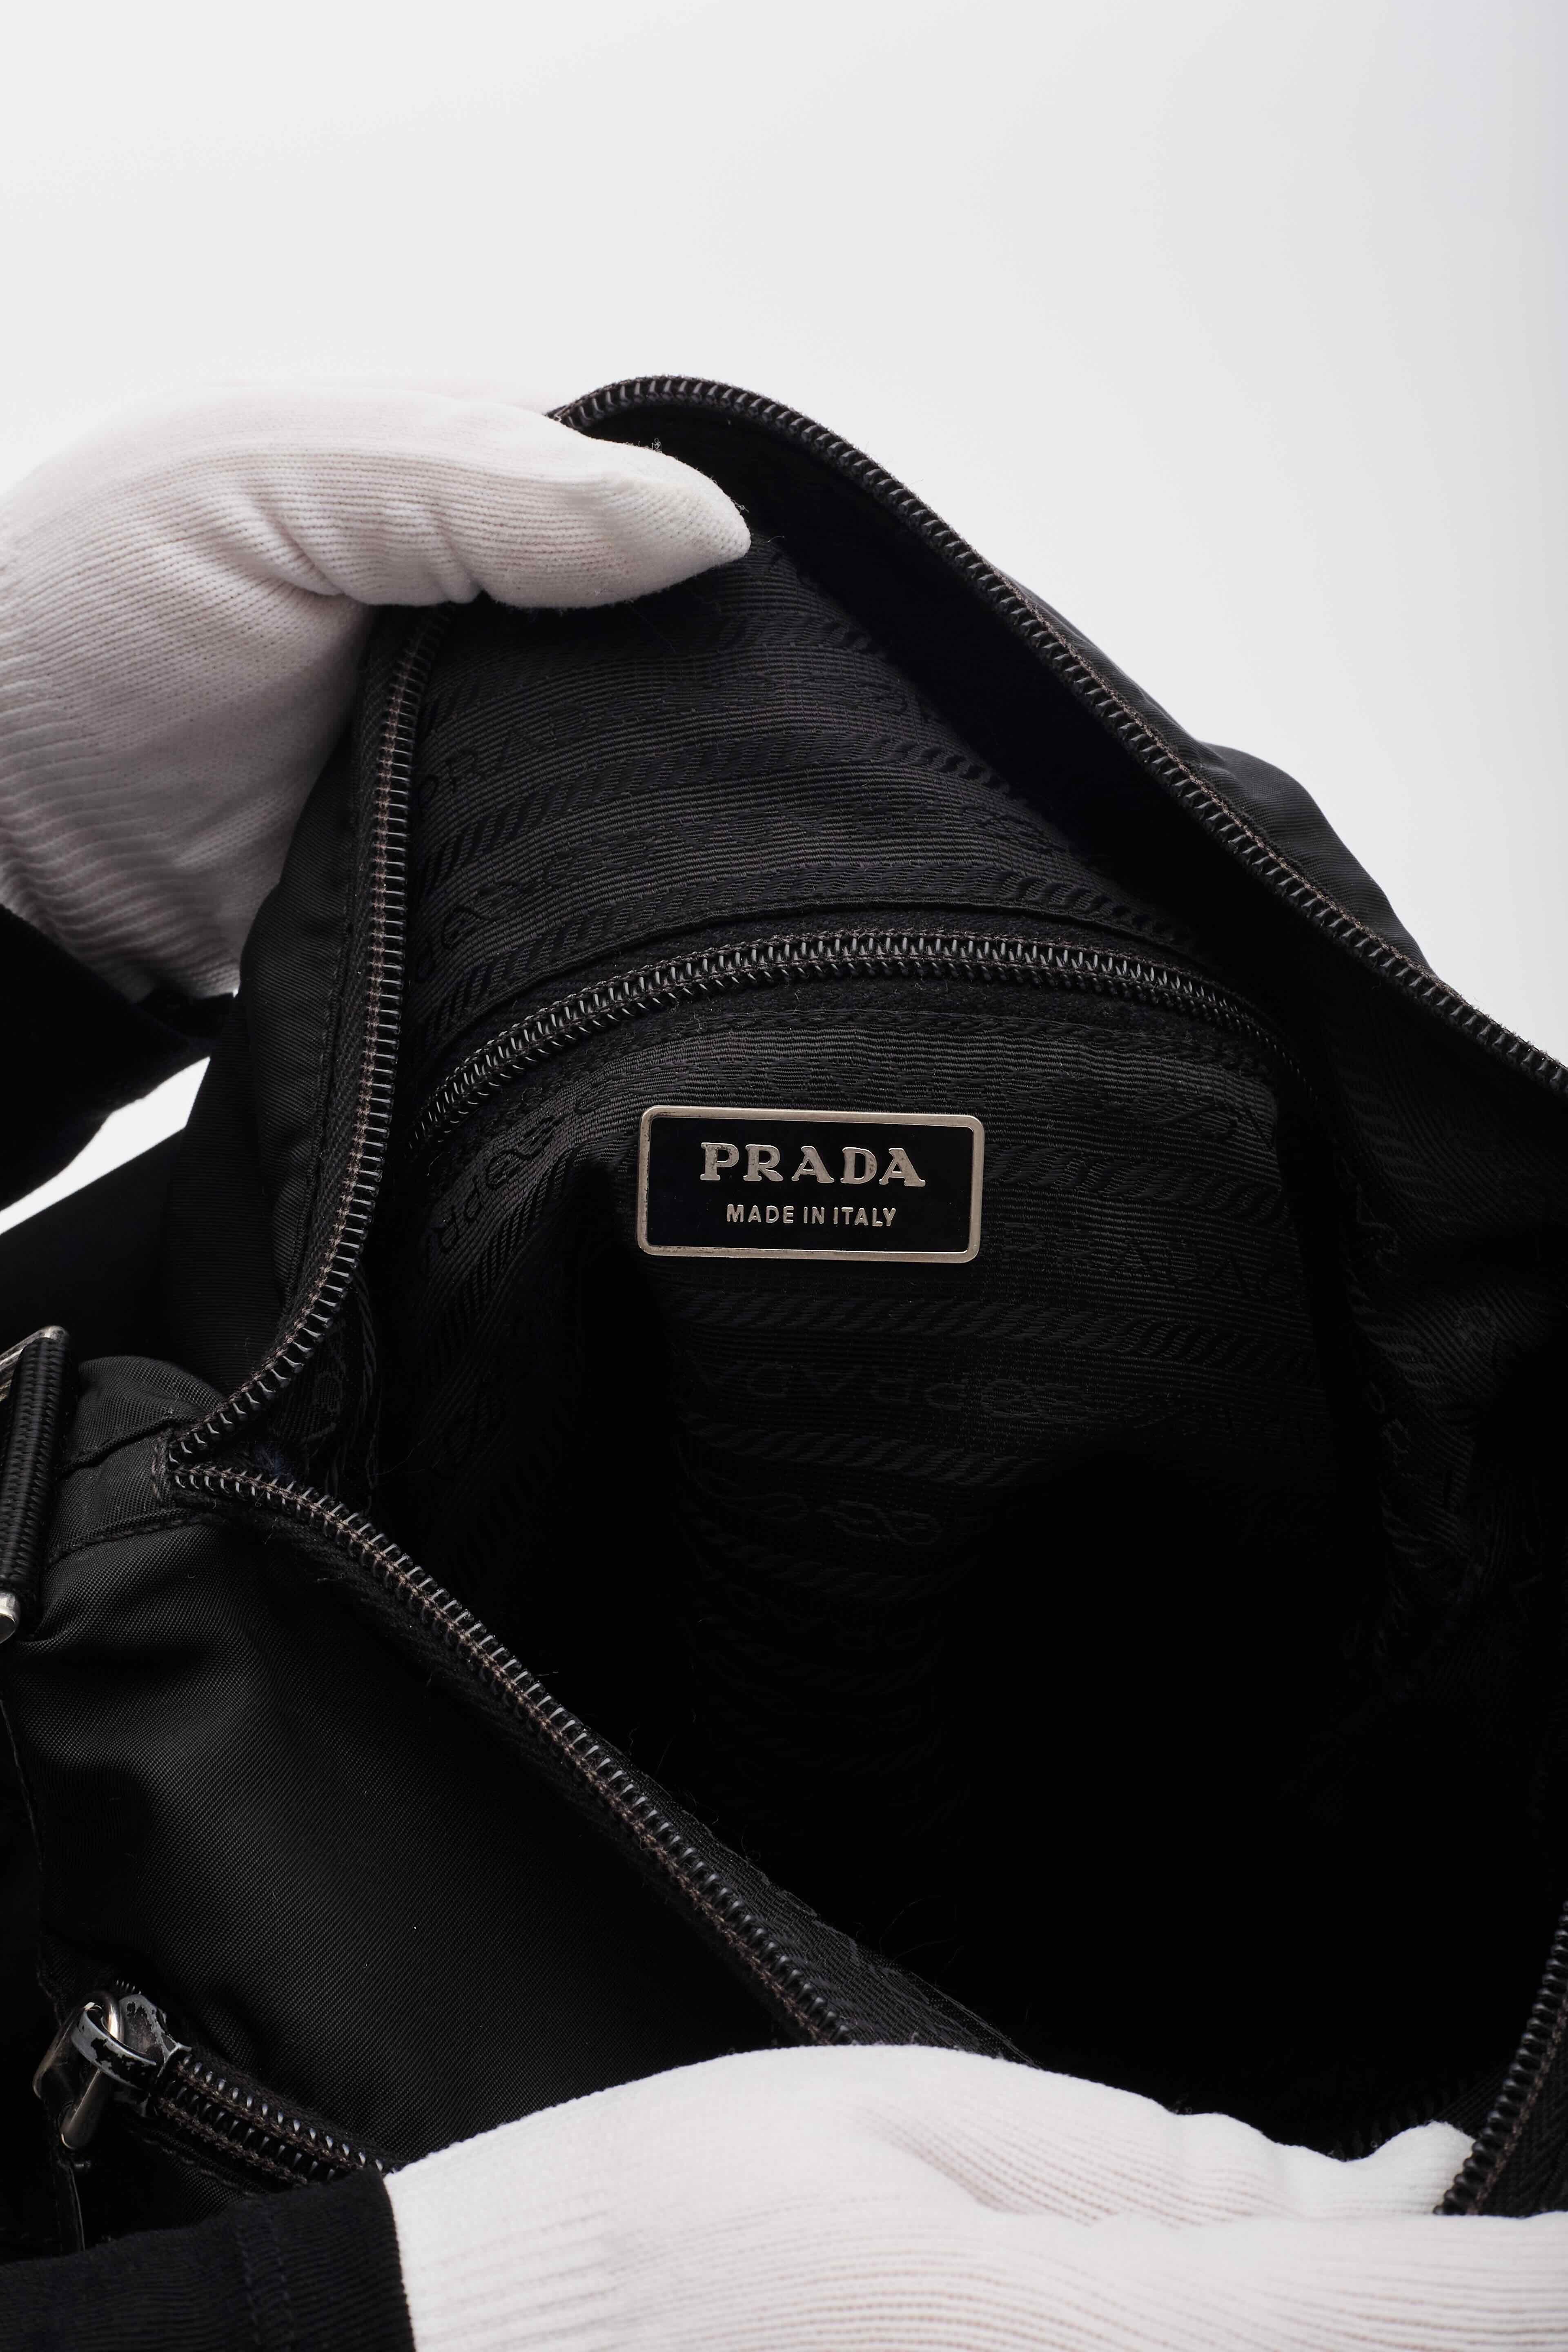 Prada Black Nylon Messenger Bag For Sale 2